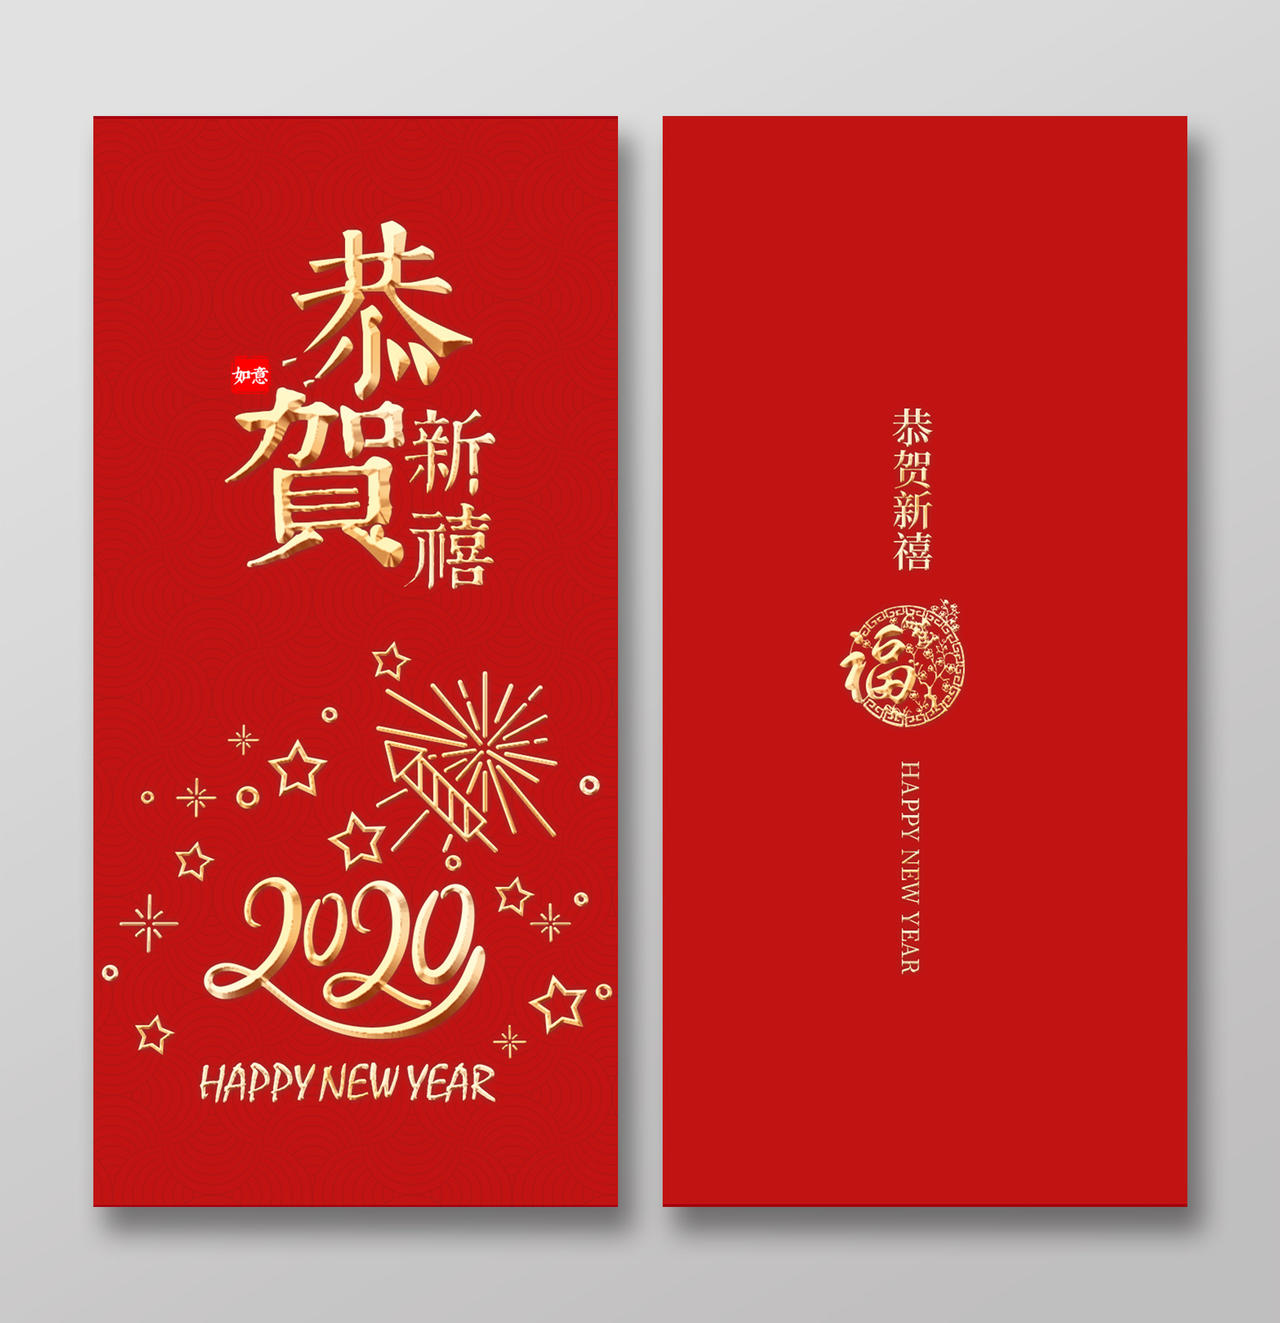 春节红包鼠年红包2020鼠年恭贺新禧红色新年红包设计鼠年红包